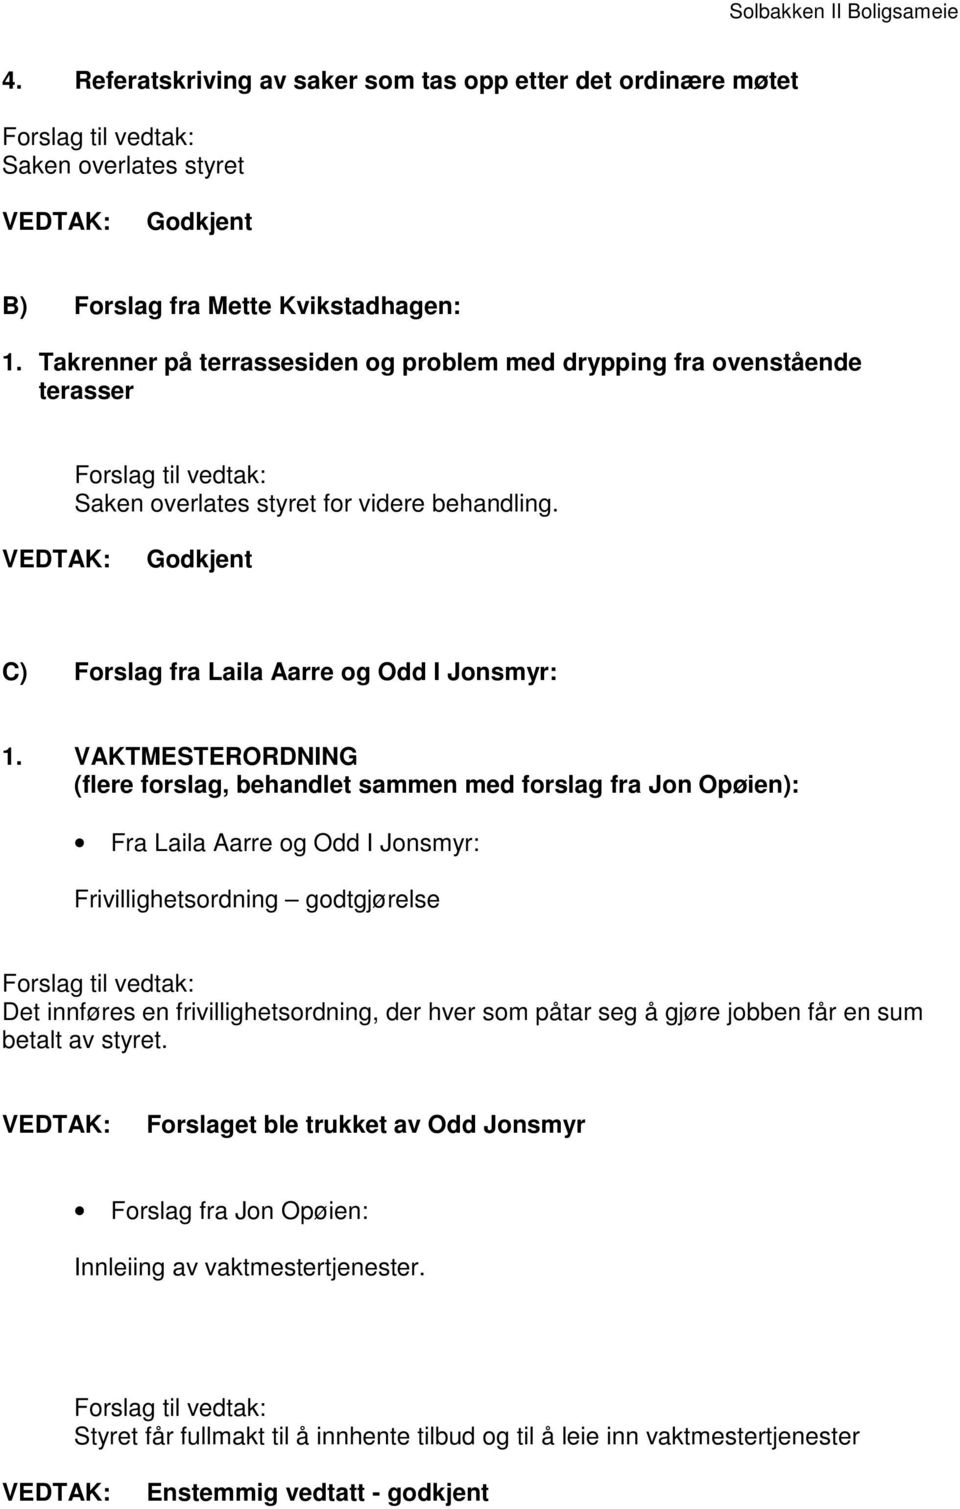 VAKTMESTERORDNING (flere forslag, behandlet sammen med forslag fra Jon Opøien): Fra Laila Aarre og Odd I Jonsmyr: Frivillighetsordning godtgjørelse Det innføres en